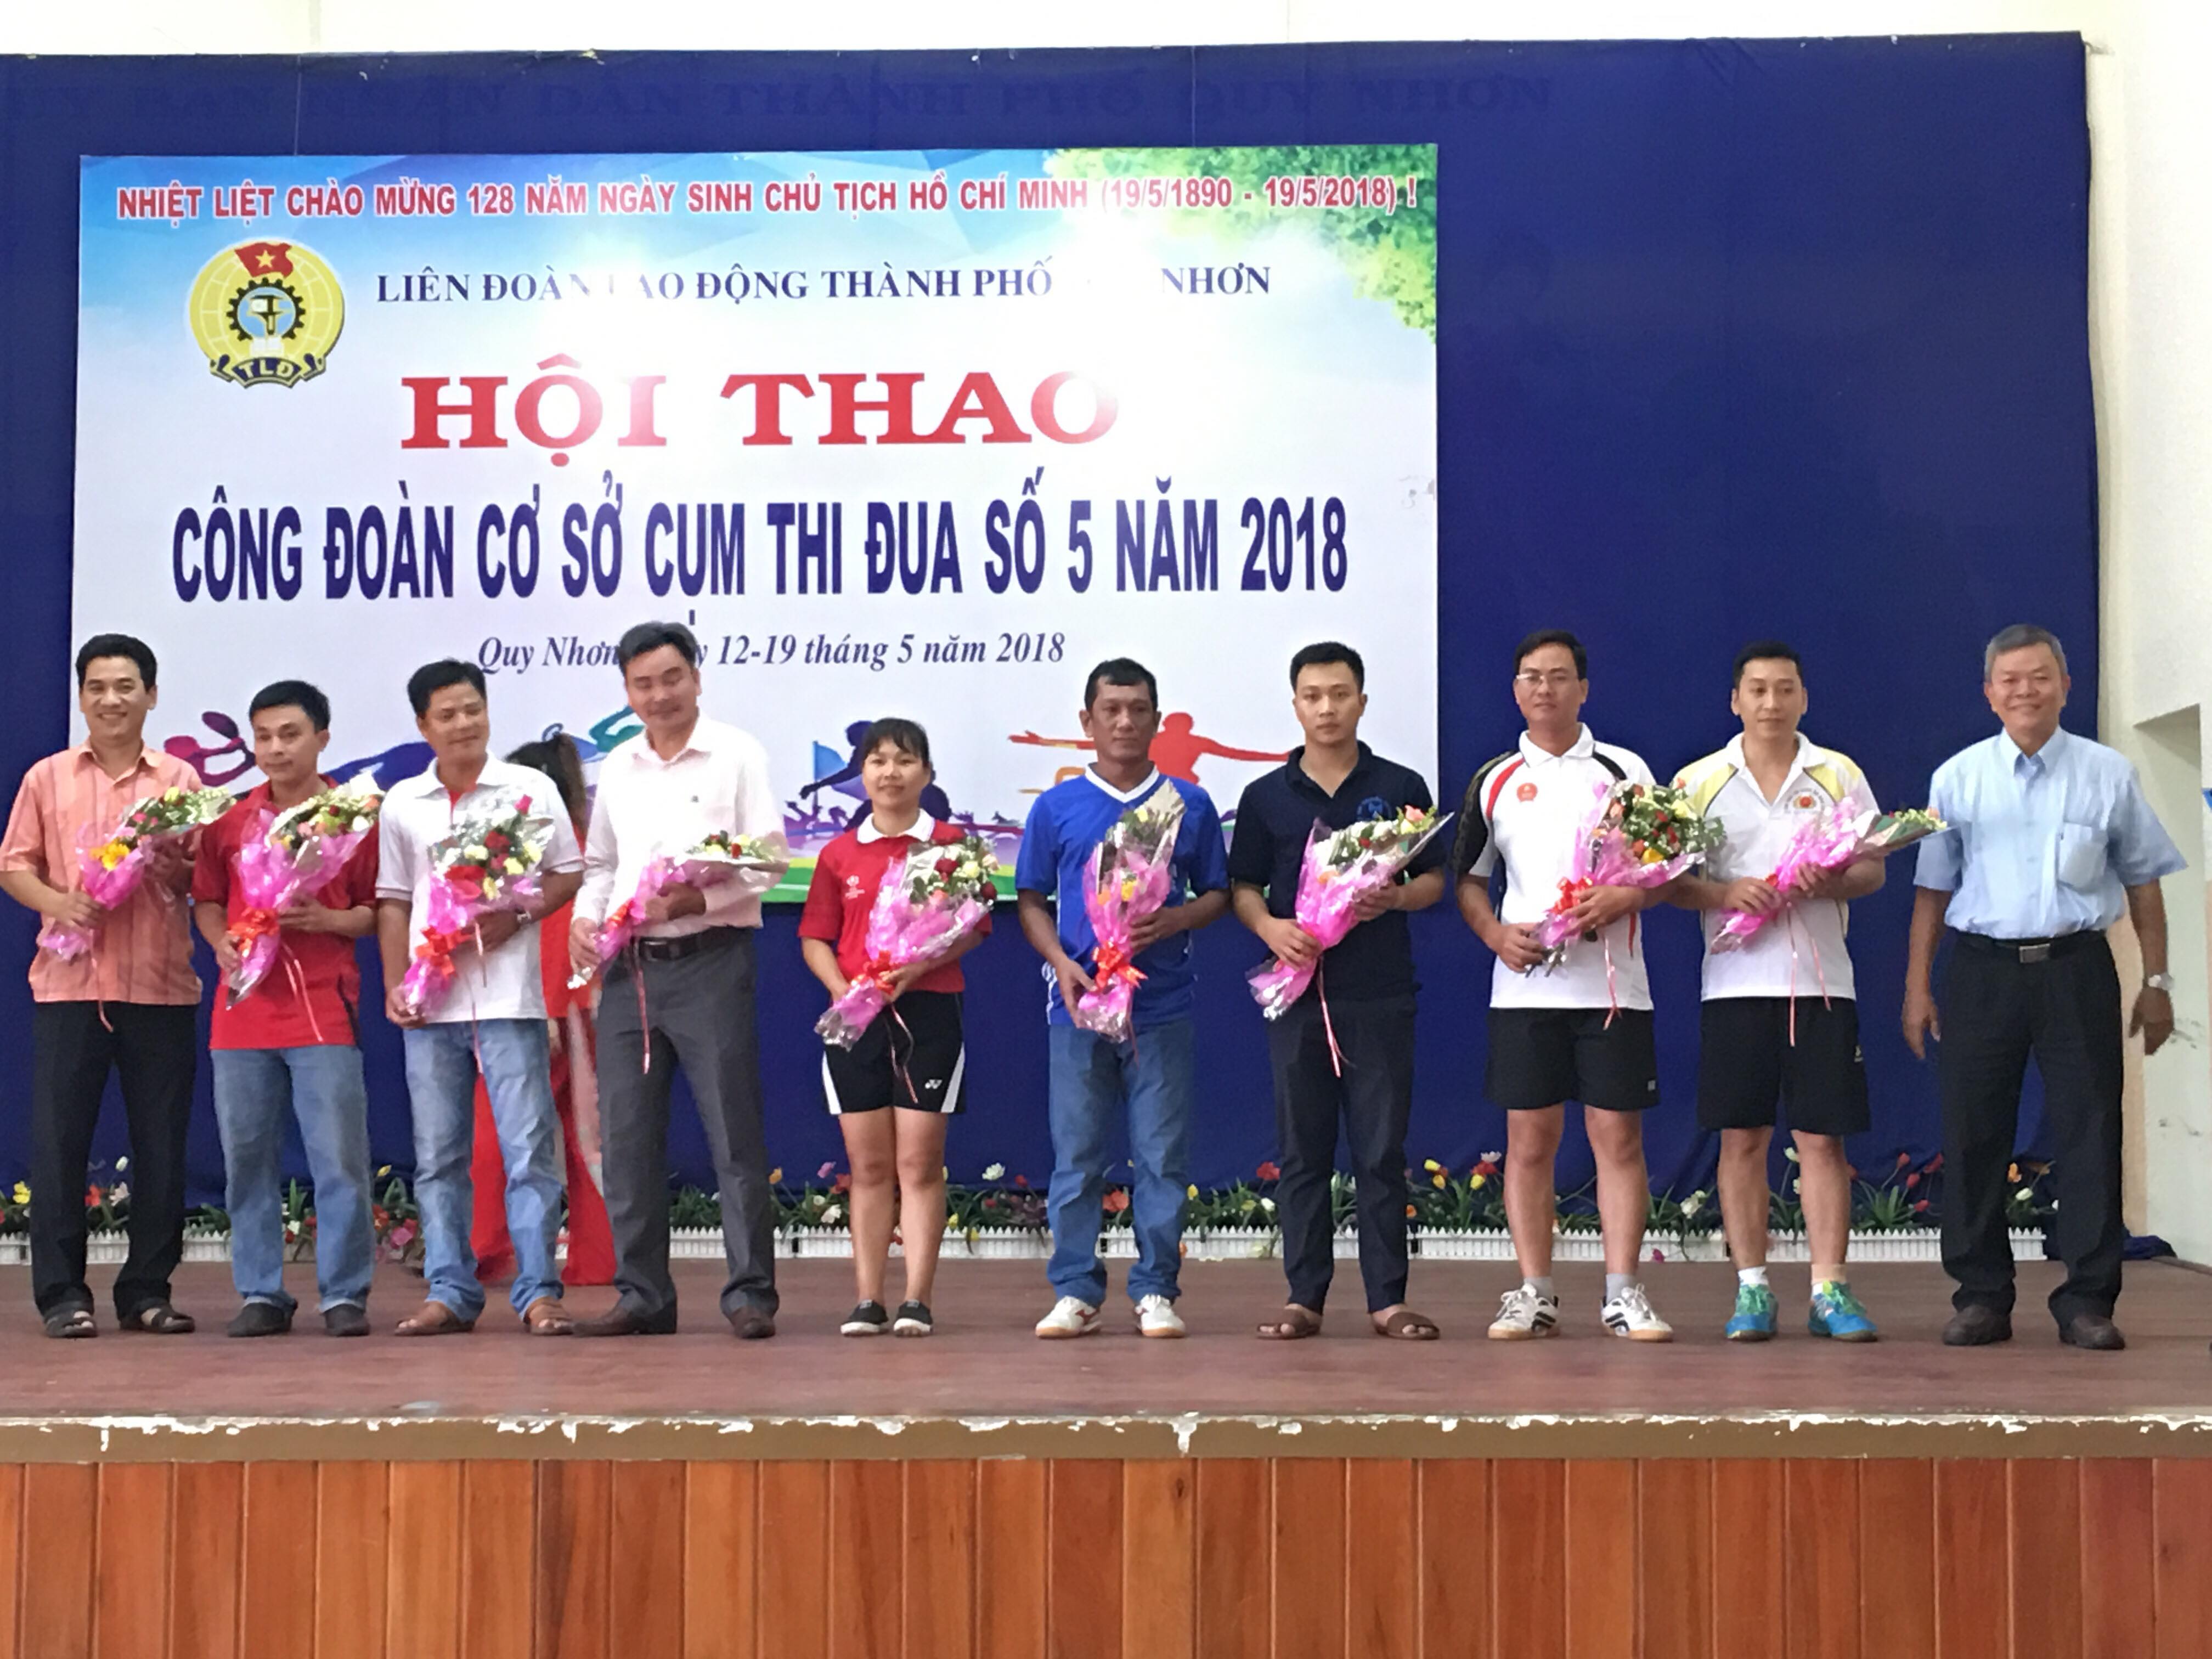 Hội thao Công đoàn cơ sở Cụm thi đua số 5 thuộc Liên đoàn lao động  thành phố Quy Nhơn lần thứ III, năm 2018